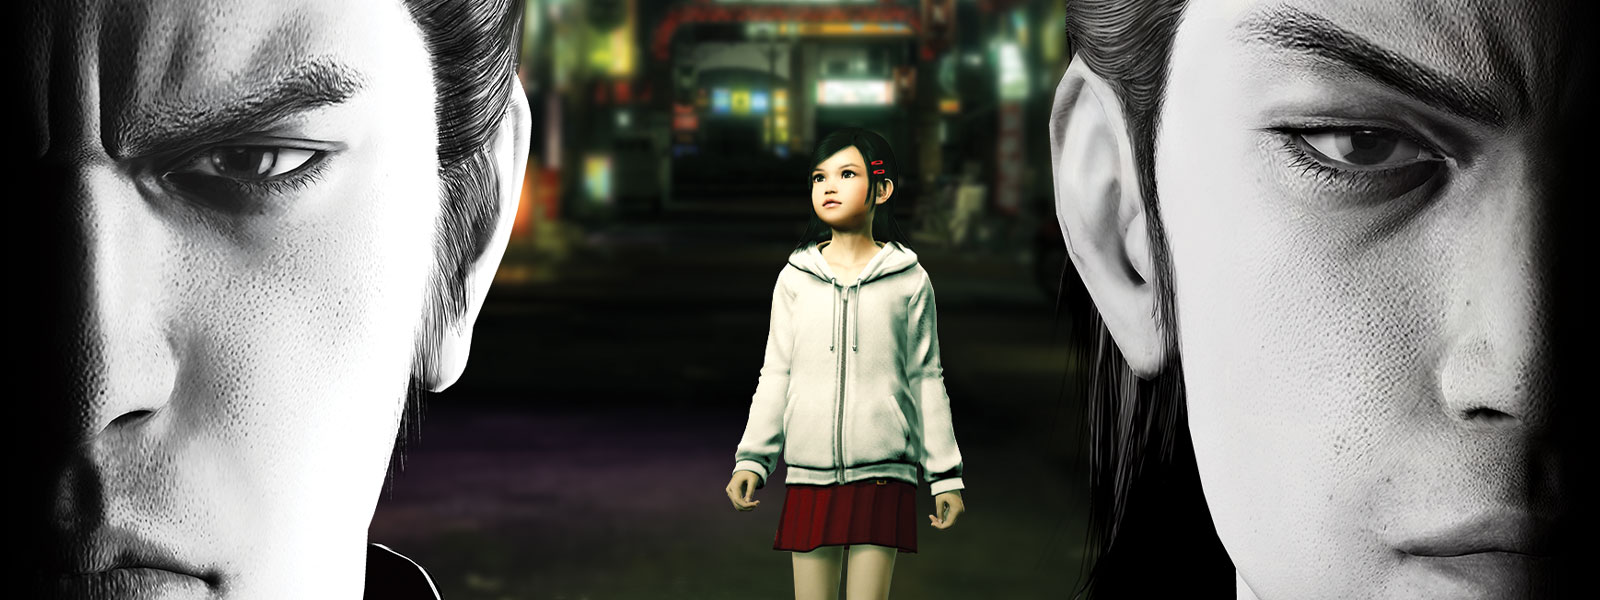 To Yakuza-figurer stirrer dystert frem for sig, mens en lille pige står i byen bag dem.